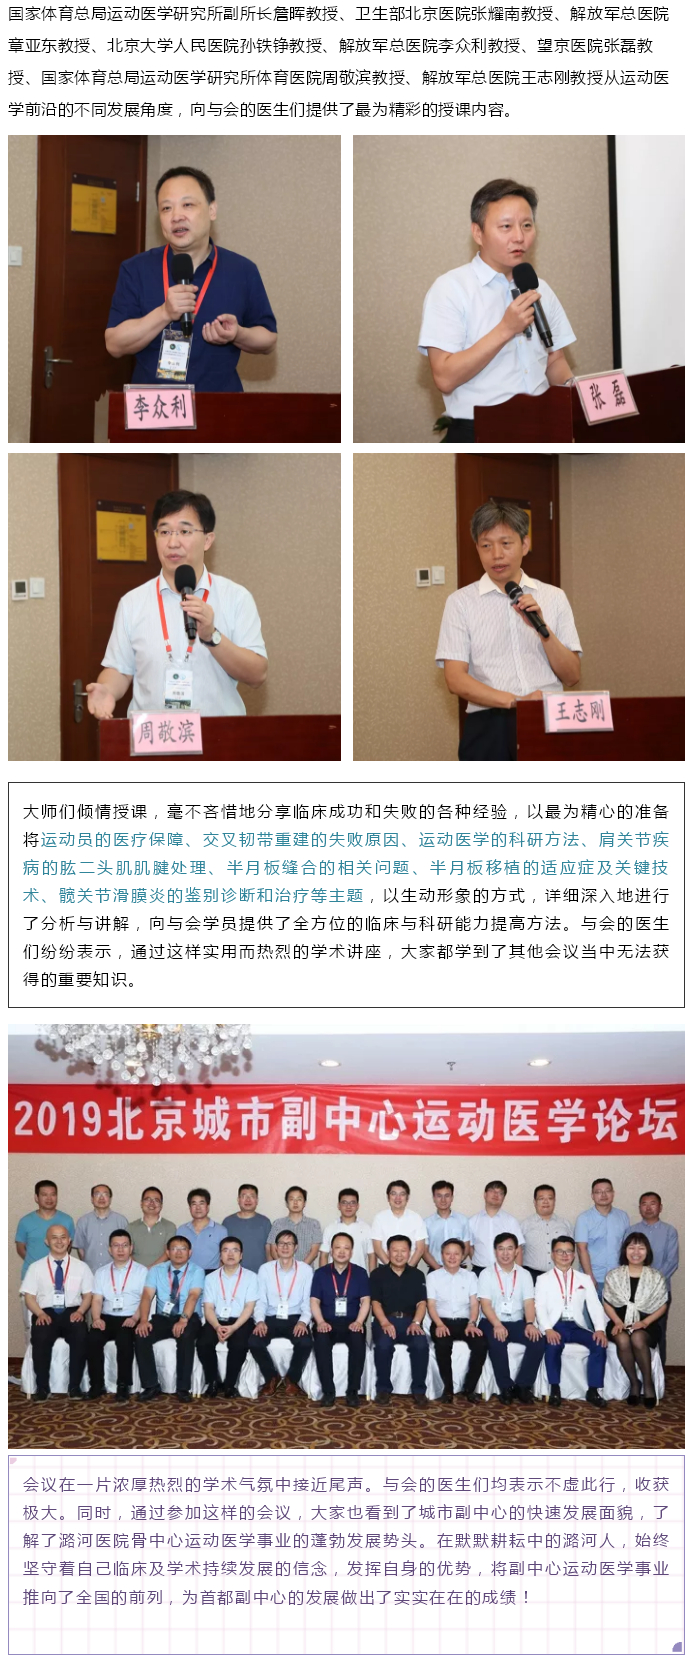 潞河医院举办2019北京城市副中心运动医学论坛--2.jpg